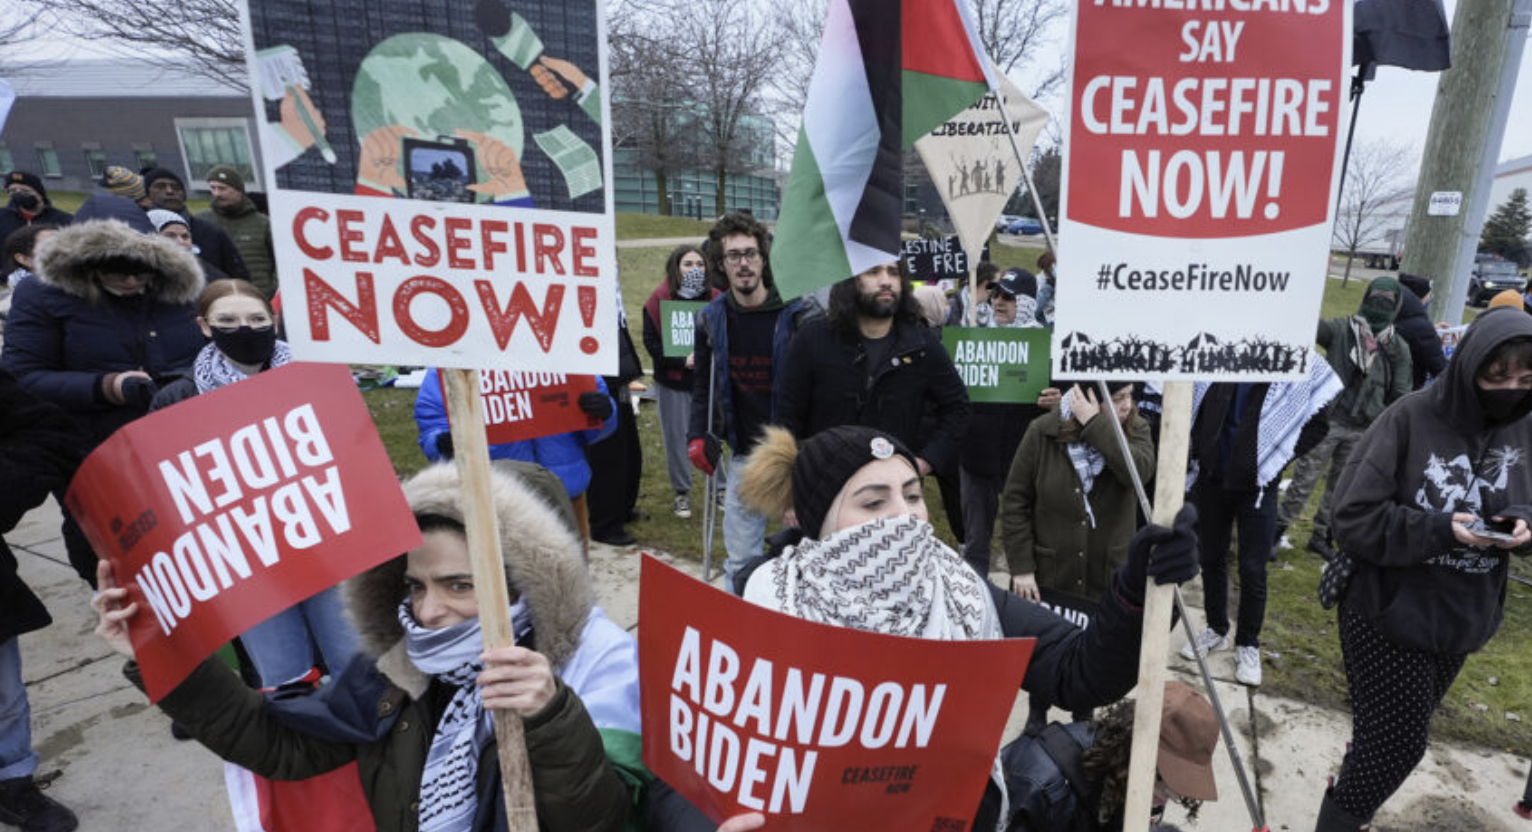 Pro-Hamas protesters in MI - abandon Biden